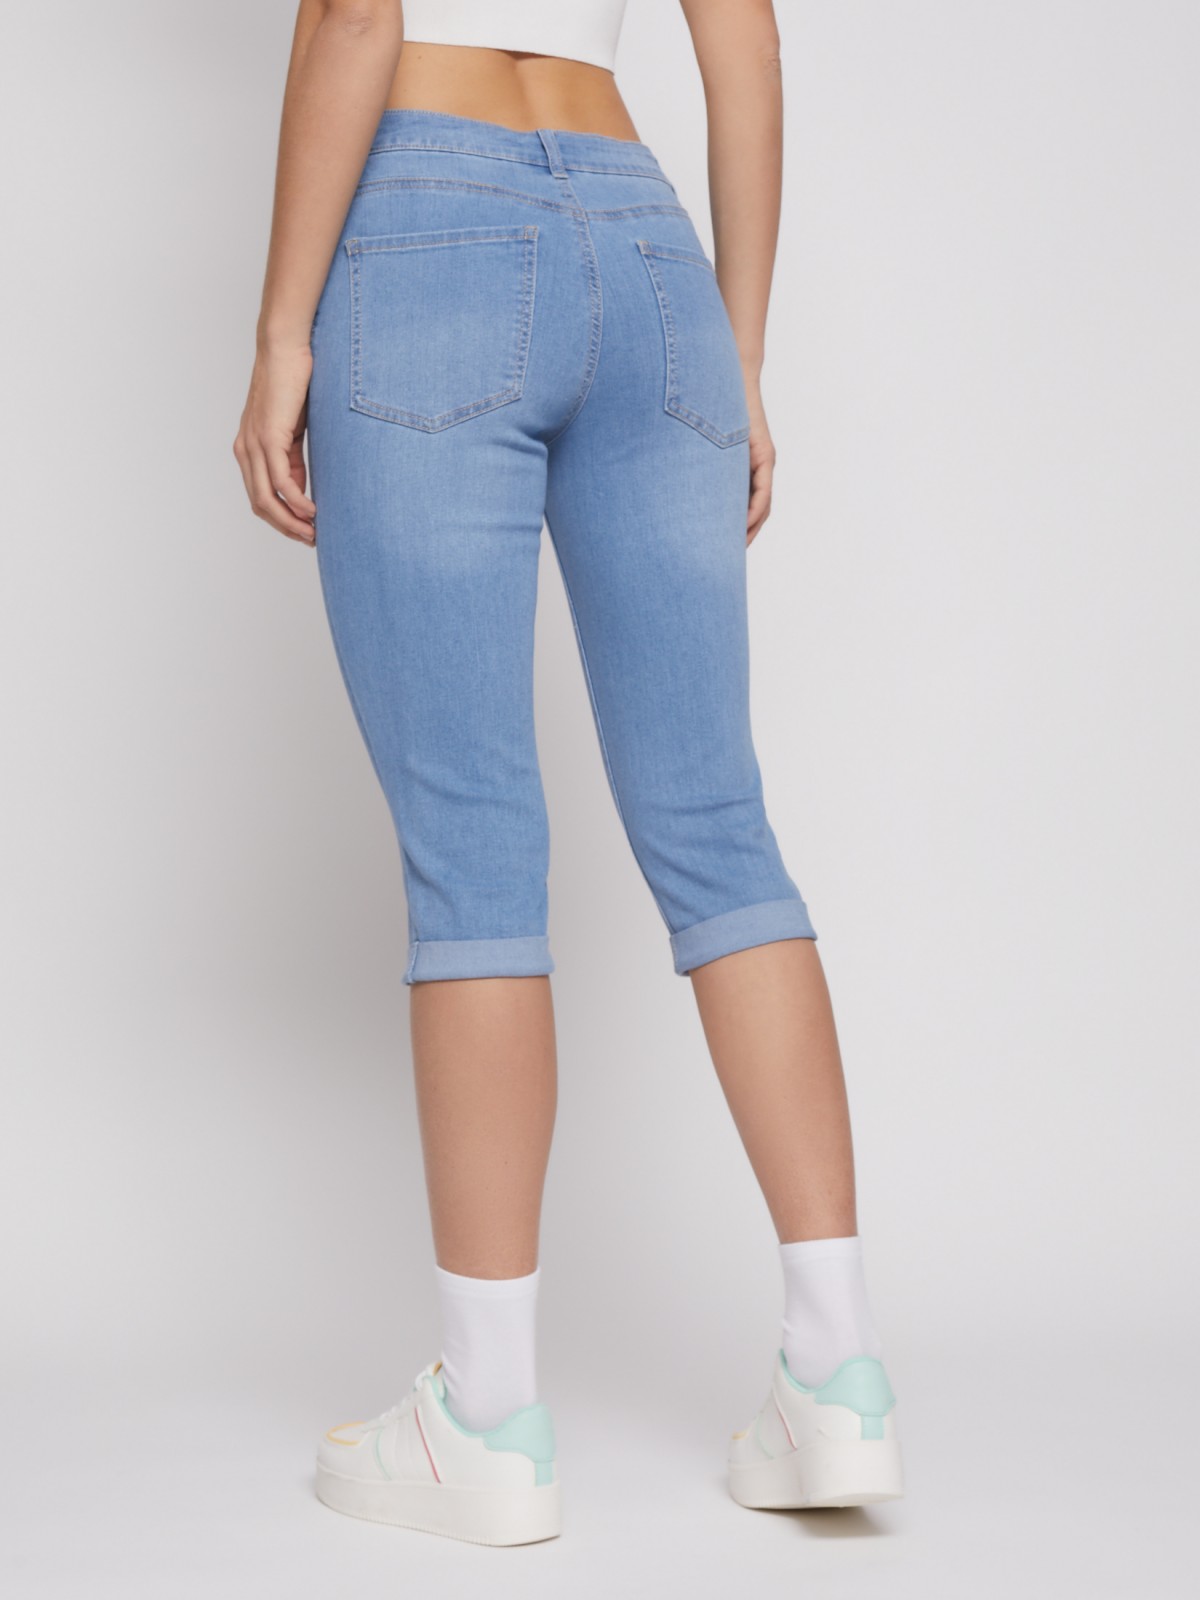 Комплект женский домашний (футболка/бриджи), цвет джинс, размер 50